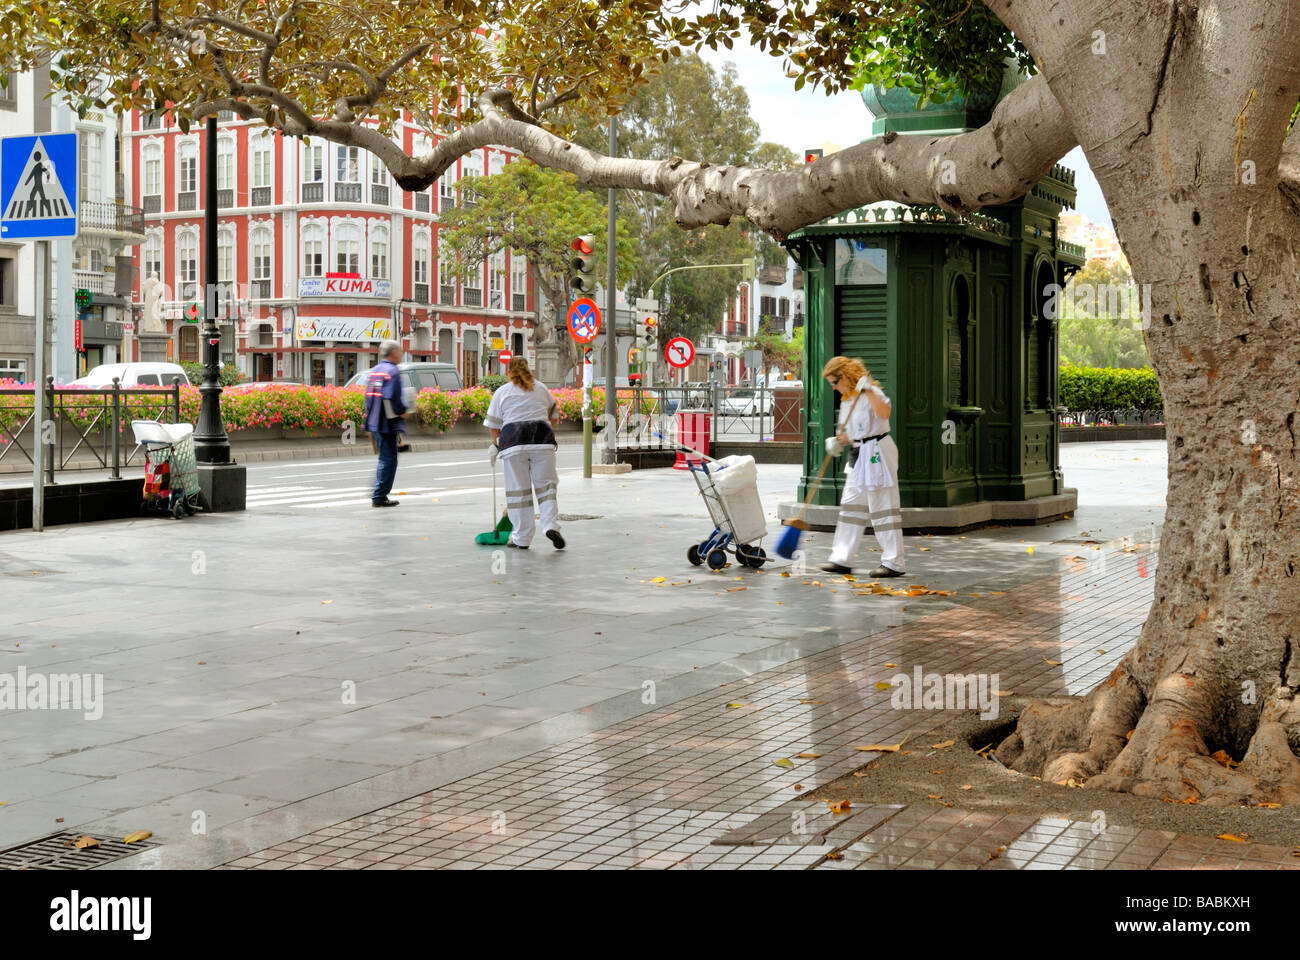 Las mujeres barriendo la calle en la Plaza Hurtado de Mendoza, también conocida como la Plaza de las Ranas, en el antiguo y elegante distrito de Tri Foto de stock